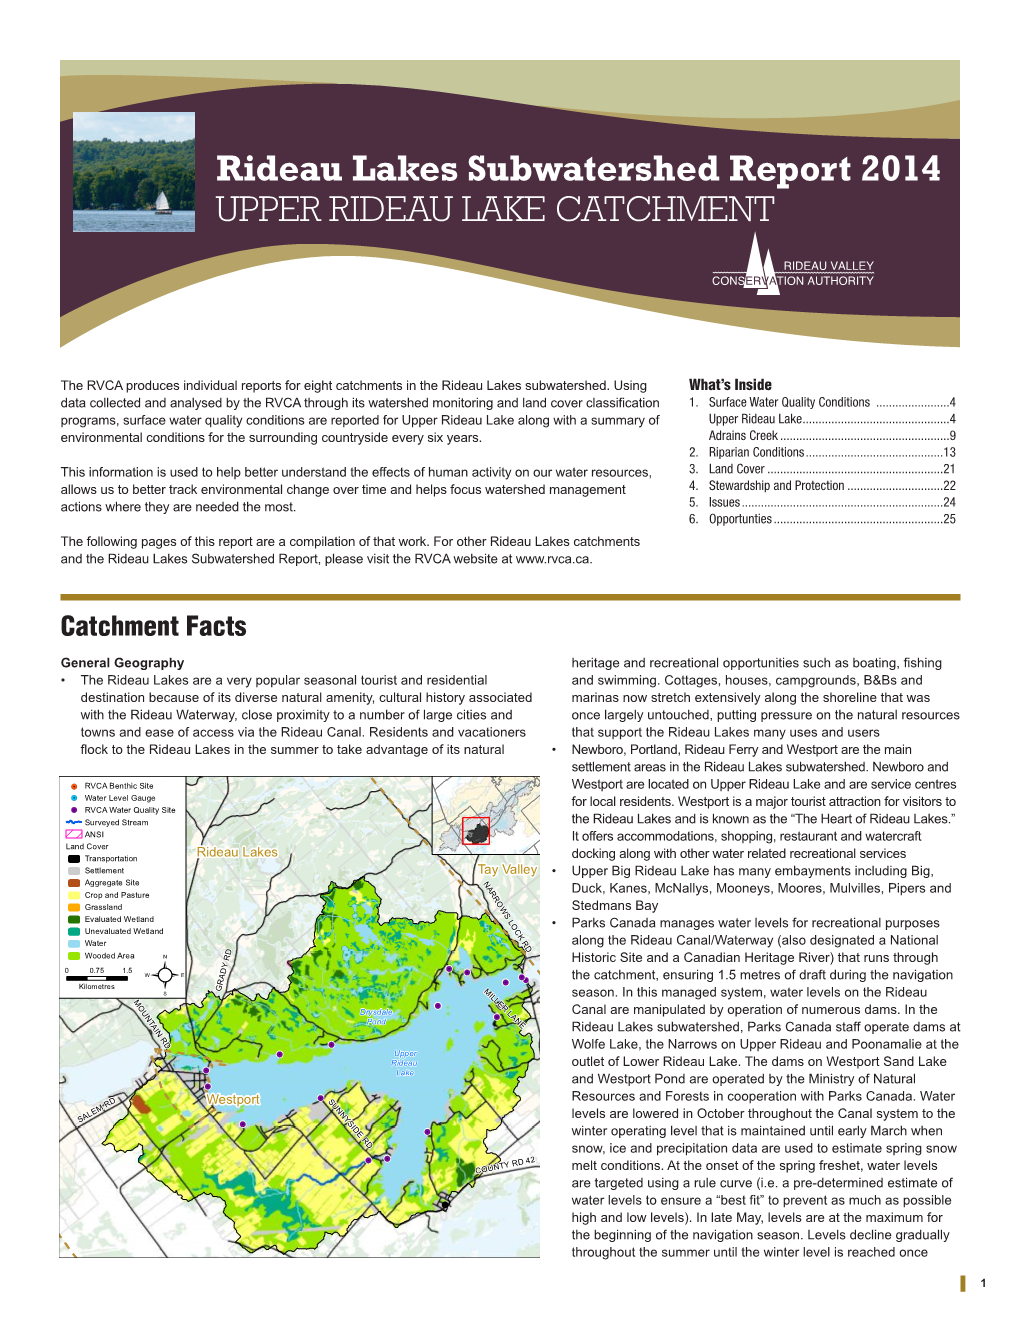 Upper Rideau Catchment Report